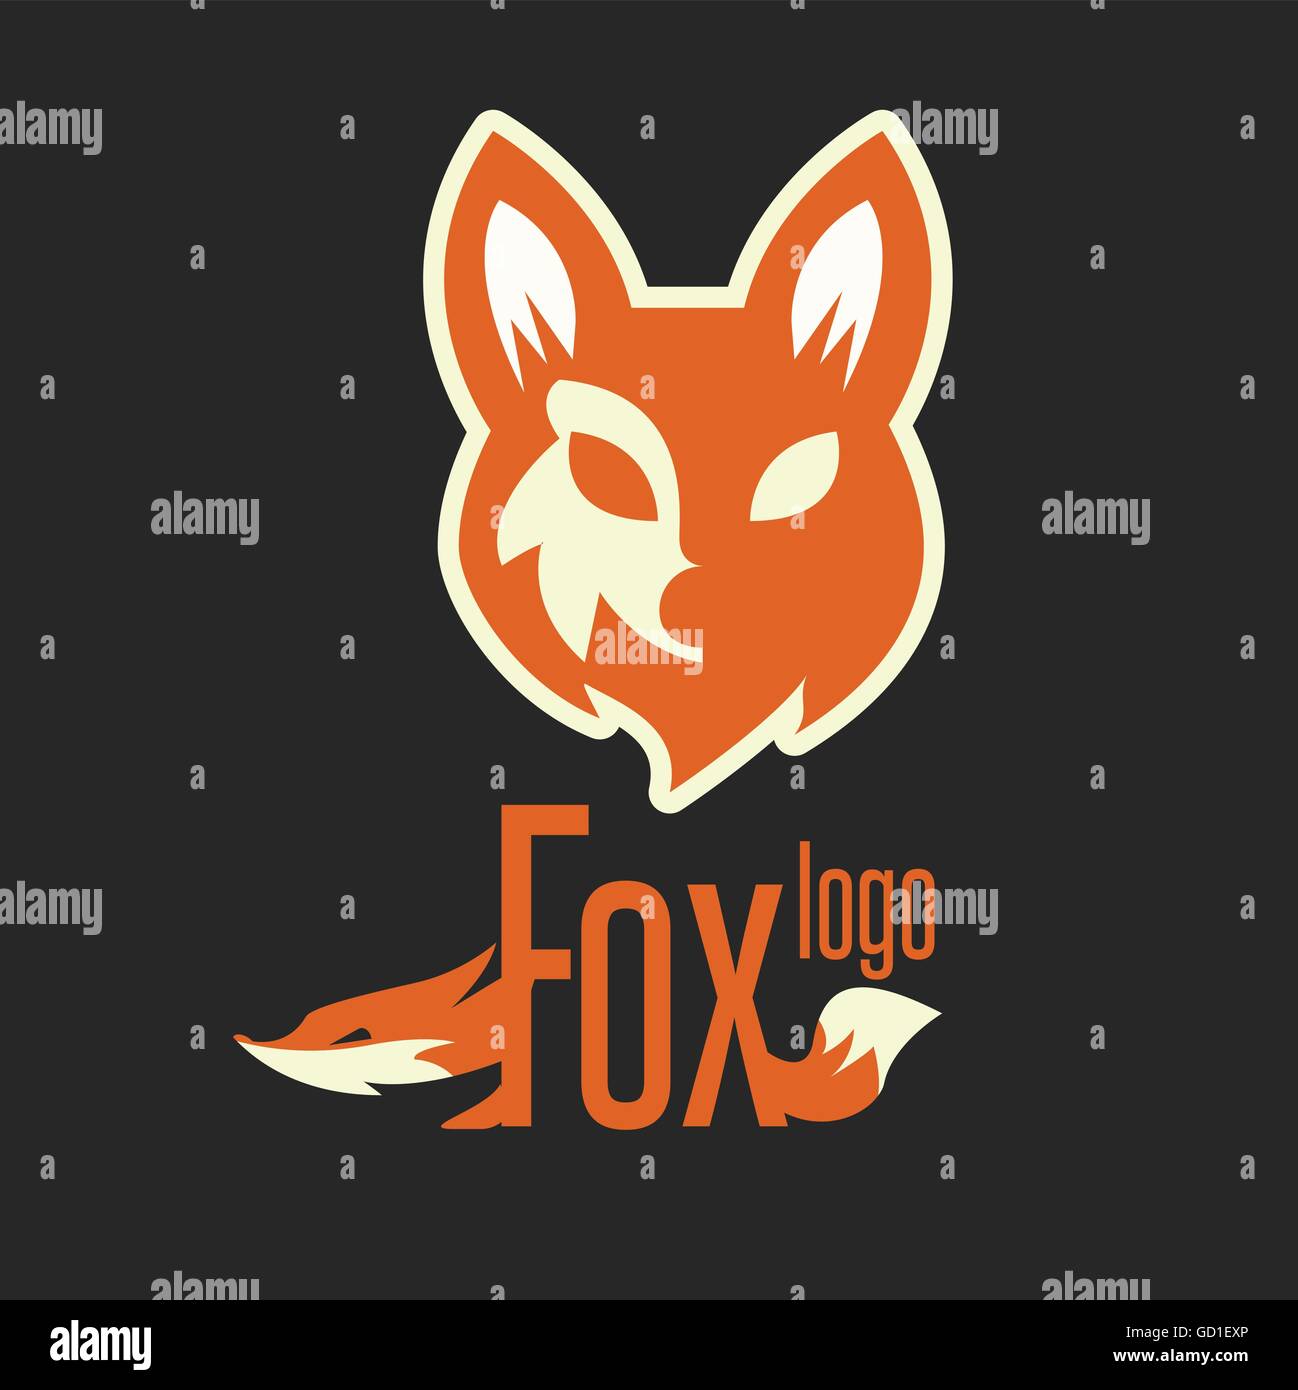 Fox logo conçu de façon simple, de sorte qu'il peut être utiliser pour de multiples propose comme marque, logo, symbole ou icône. Illustration de Vecteur